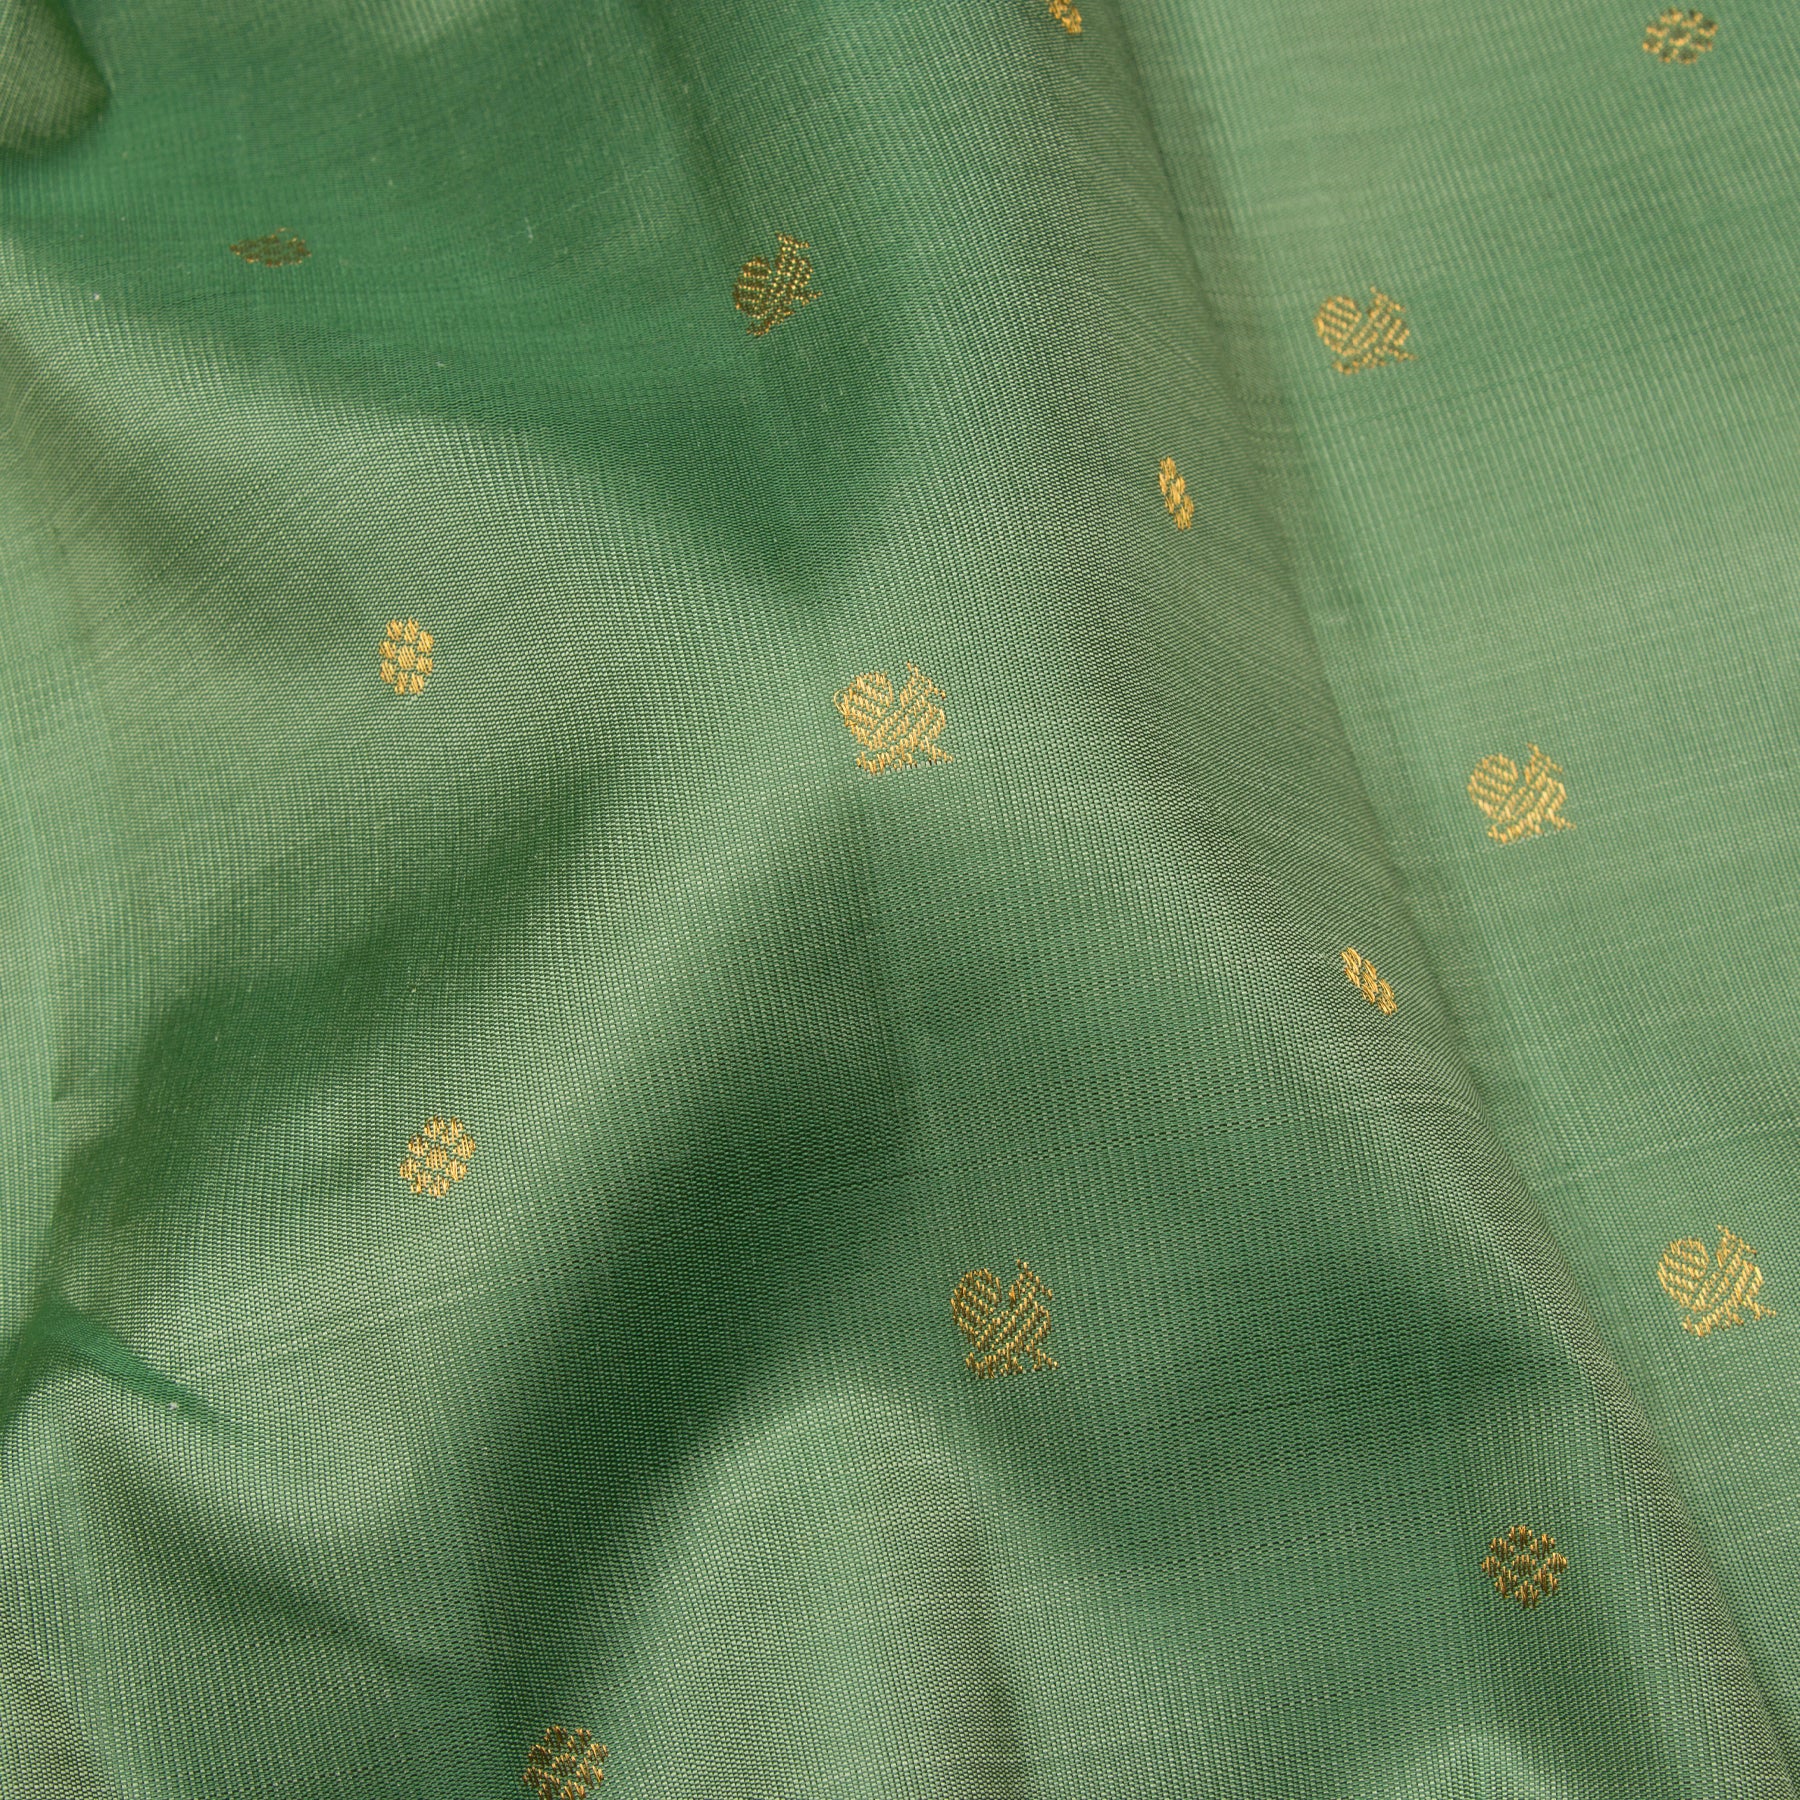 Kanakavalli Kanjivaram Silk Sari 24-110-HS001-01898 - Fabric View